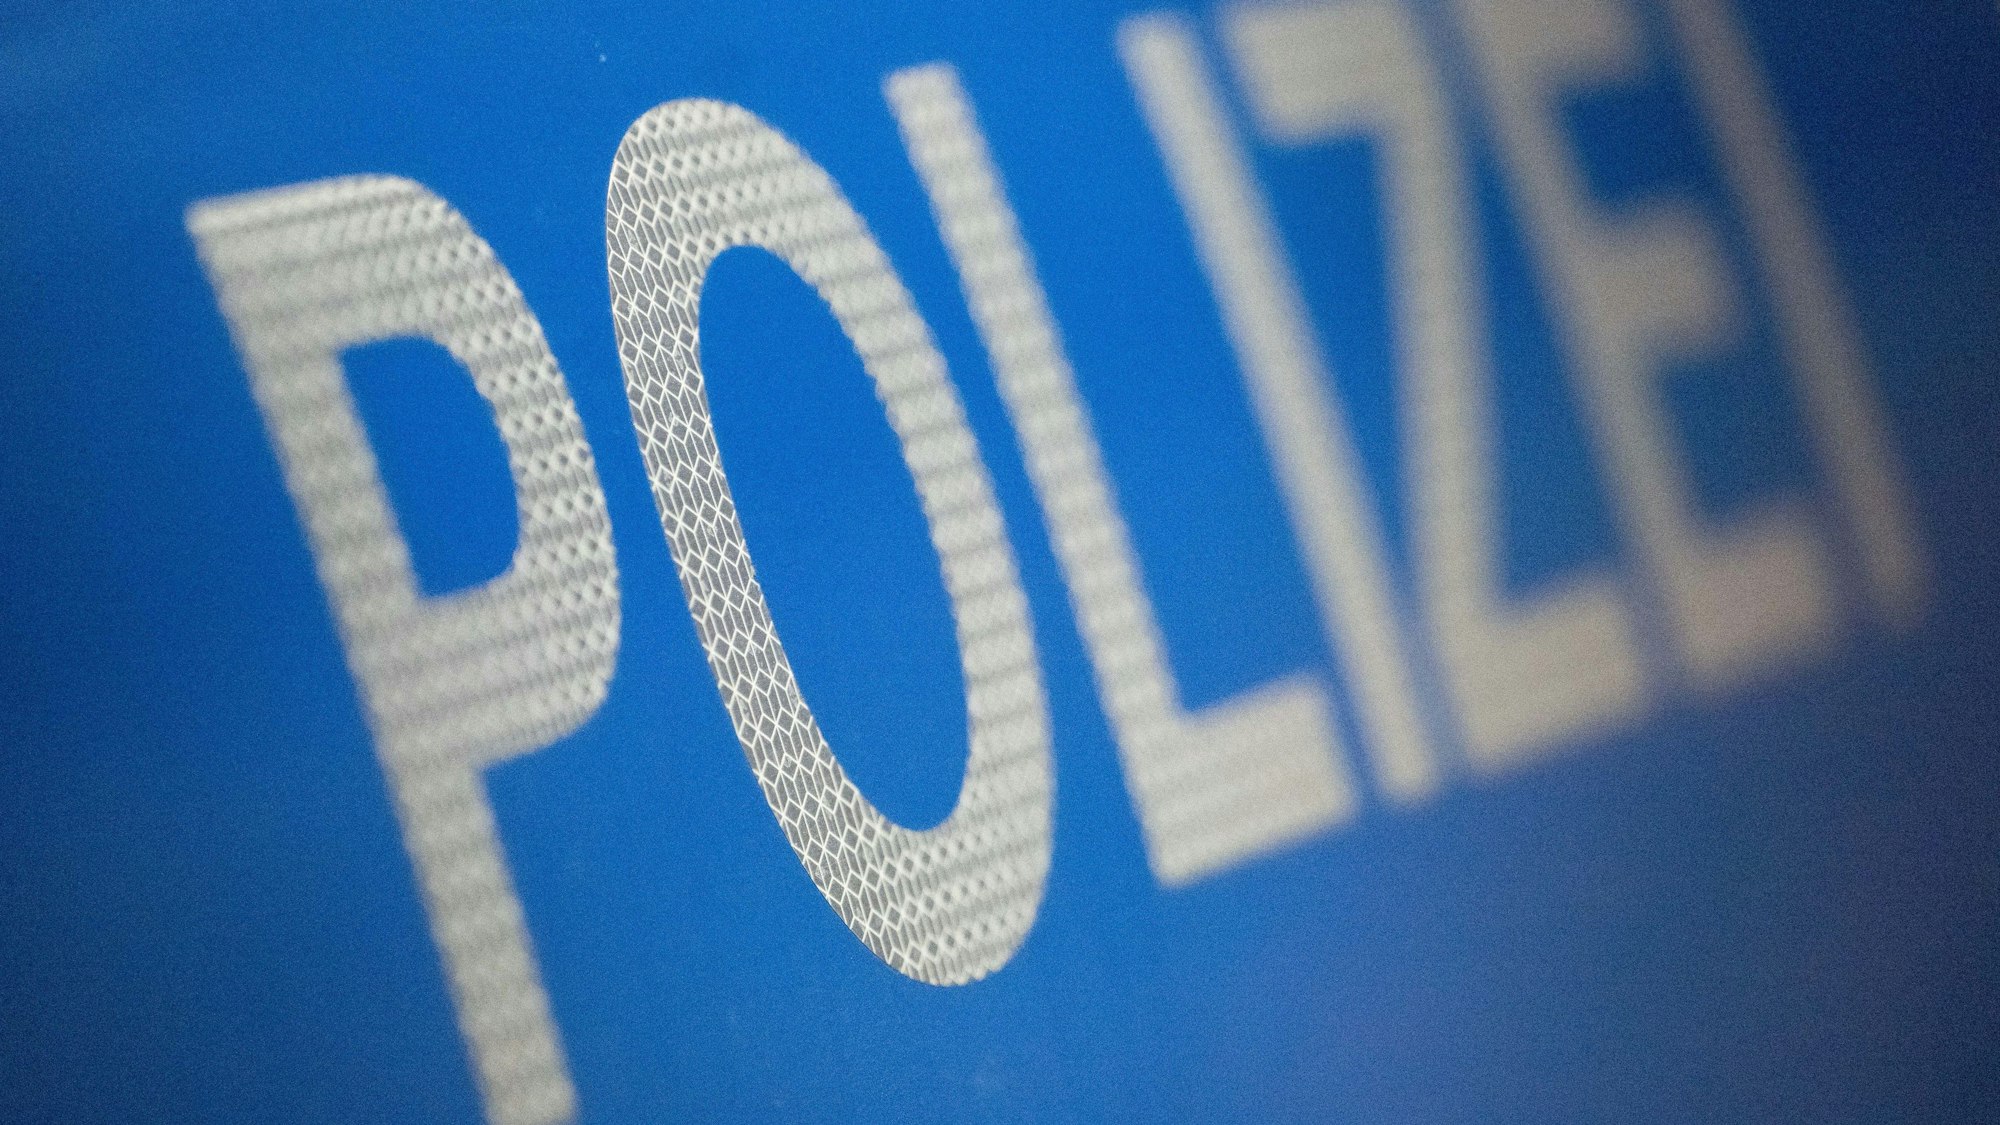 Das Wort Polizei ist im Rahmen eines Fototermins auf der Karosserie eines Polizeifahrzeugs zu sehen (gestellte Szene).